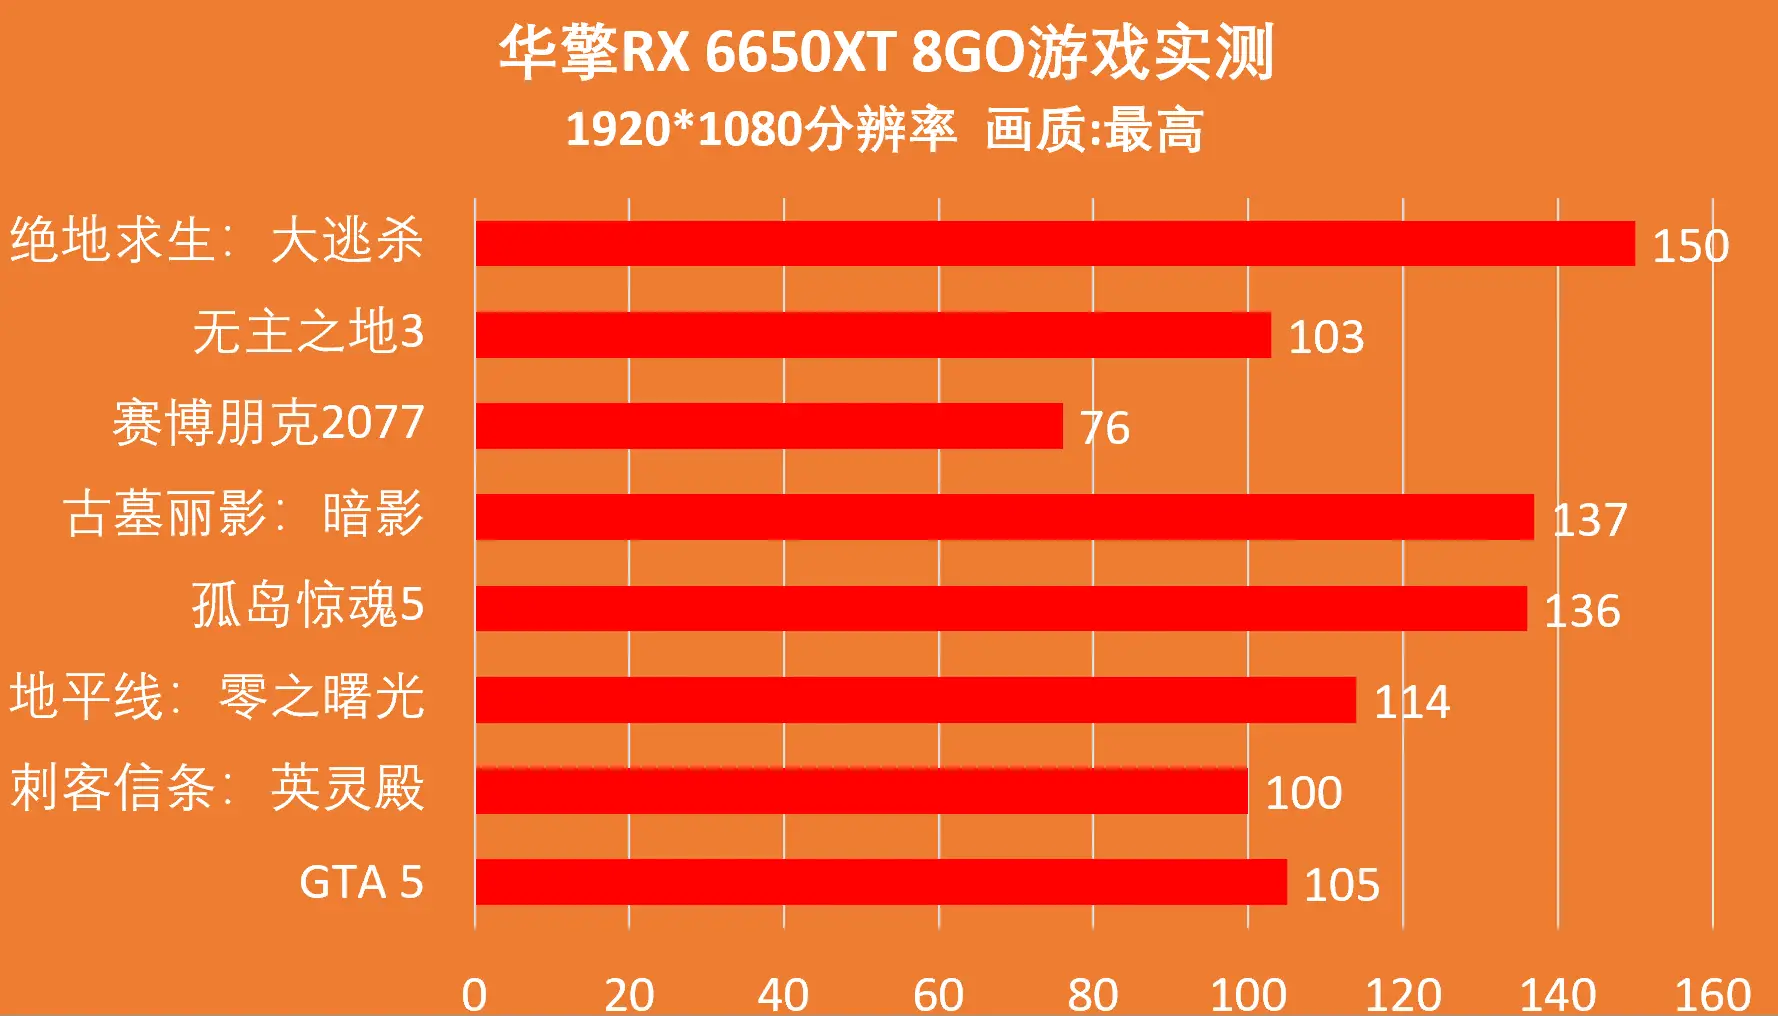 DDR5与DDR4内存详细比较：技术规格、性能表现及应用场景全面解析  第9张